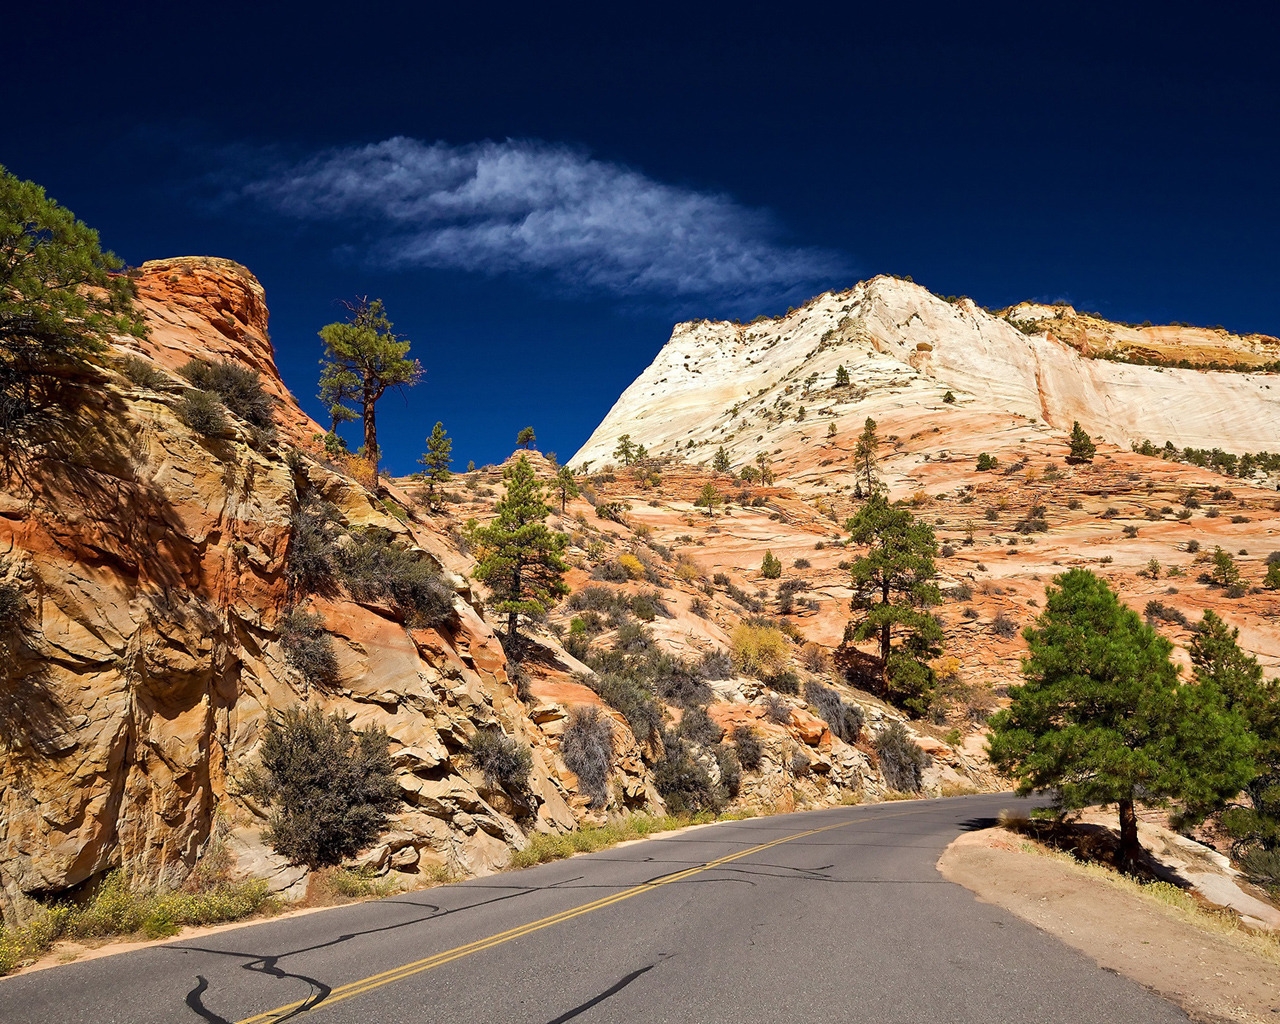 Desert Road for 1280 x 1024 resolution